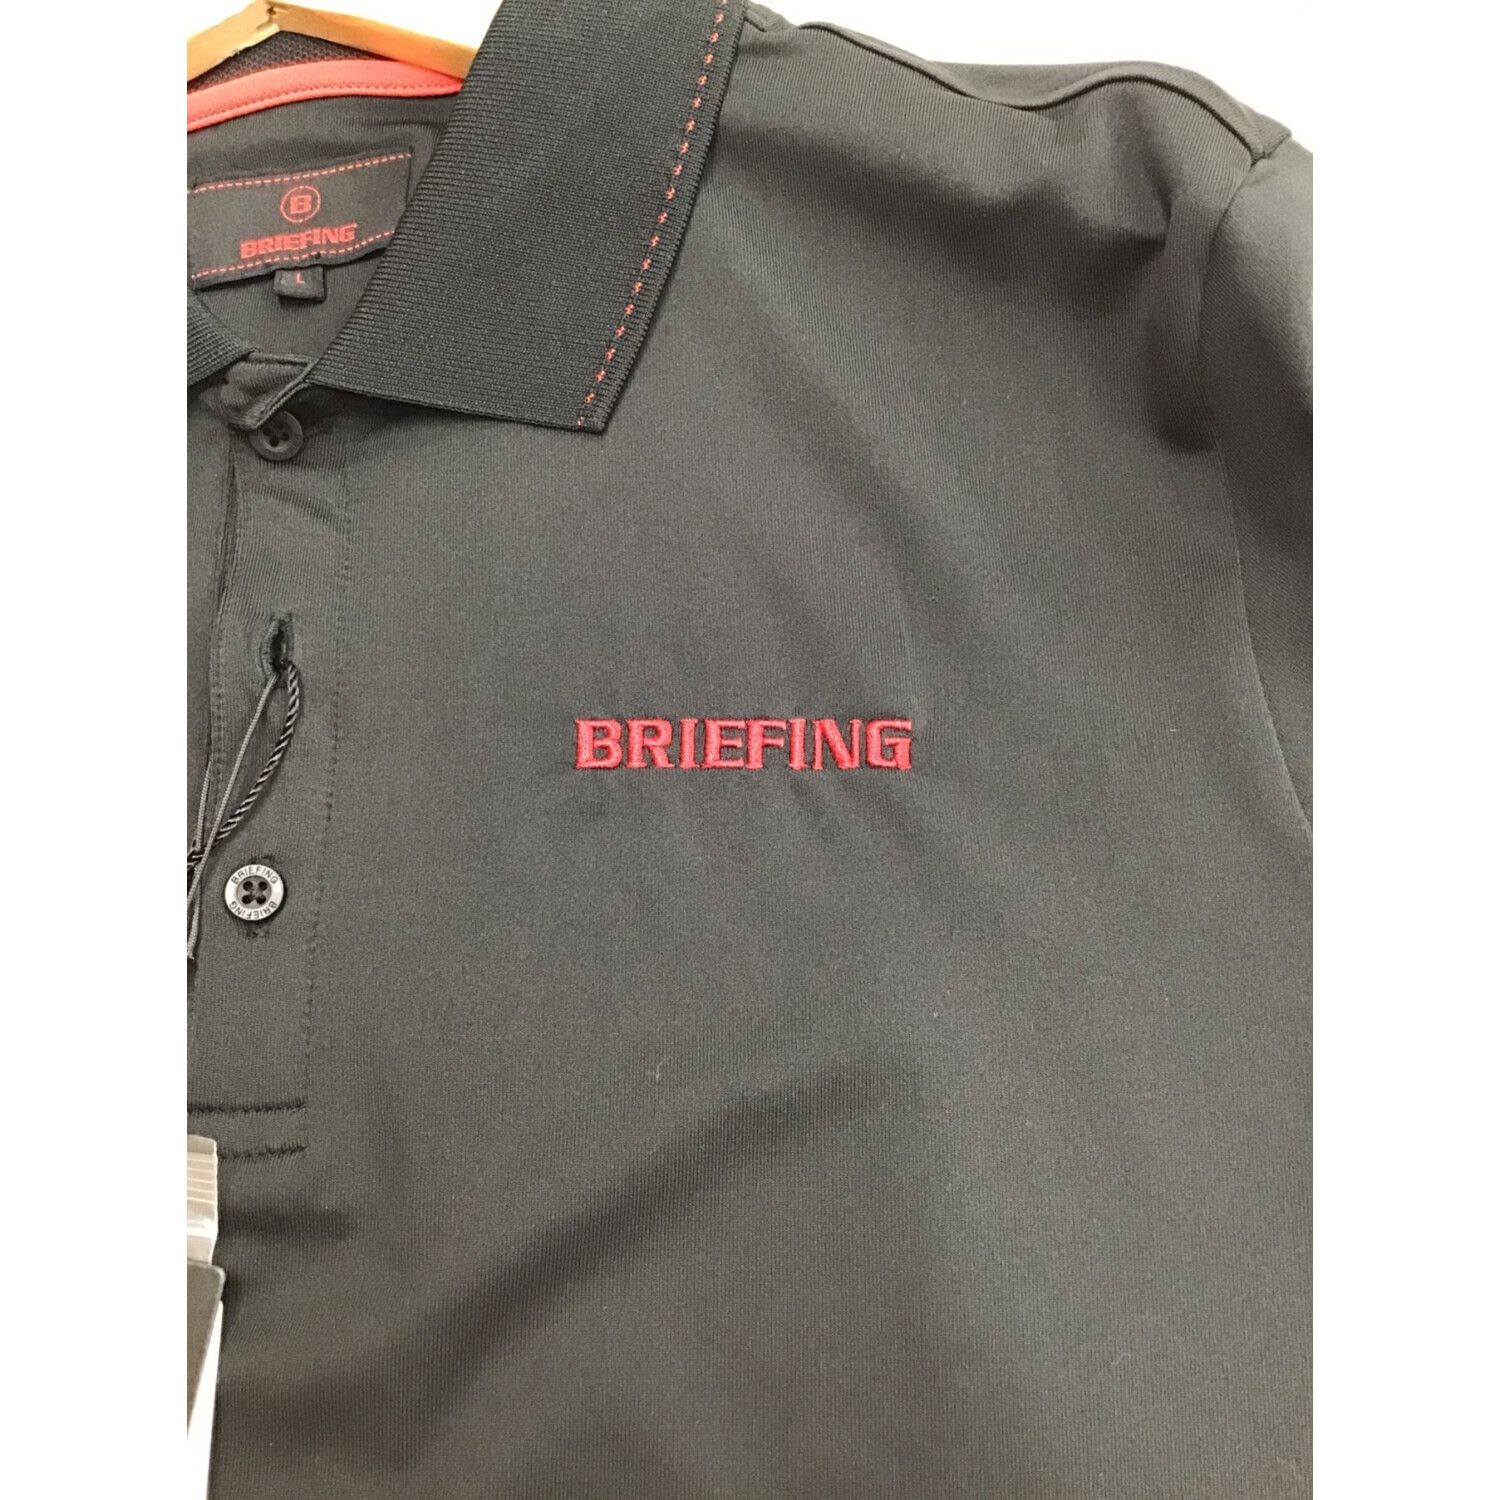 BRIEFING (ブリーフィング) ゴルフウェア(トップス) メンズ SIZE L ...